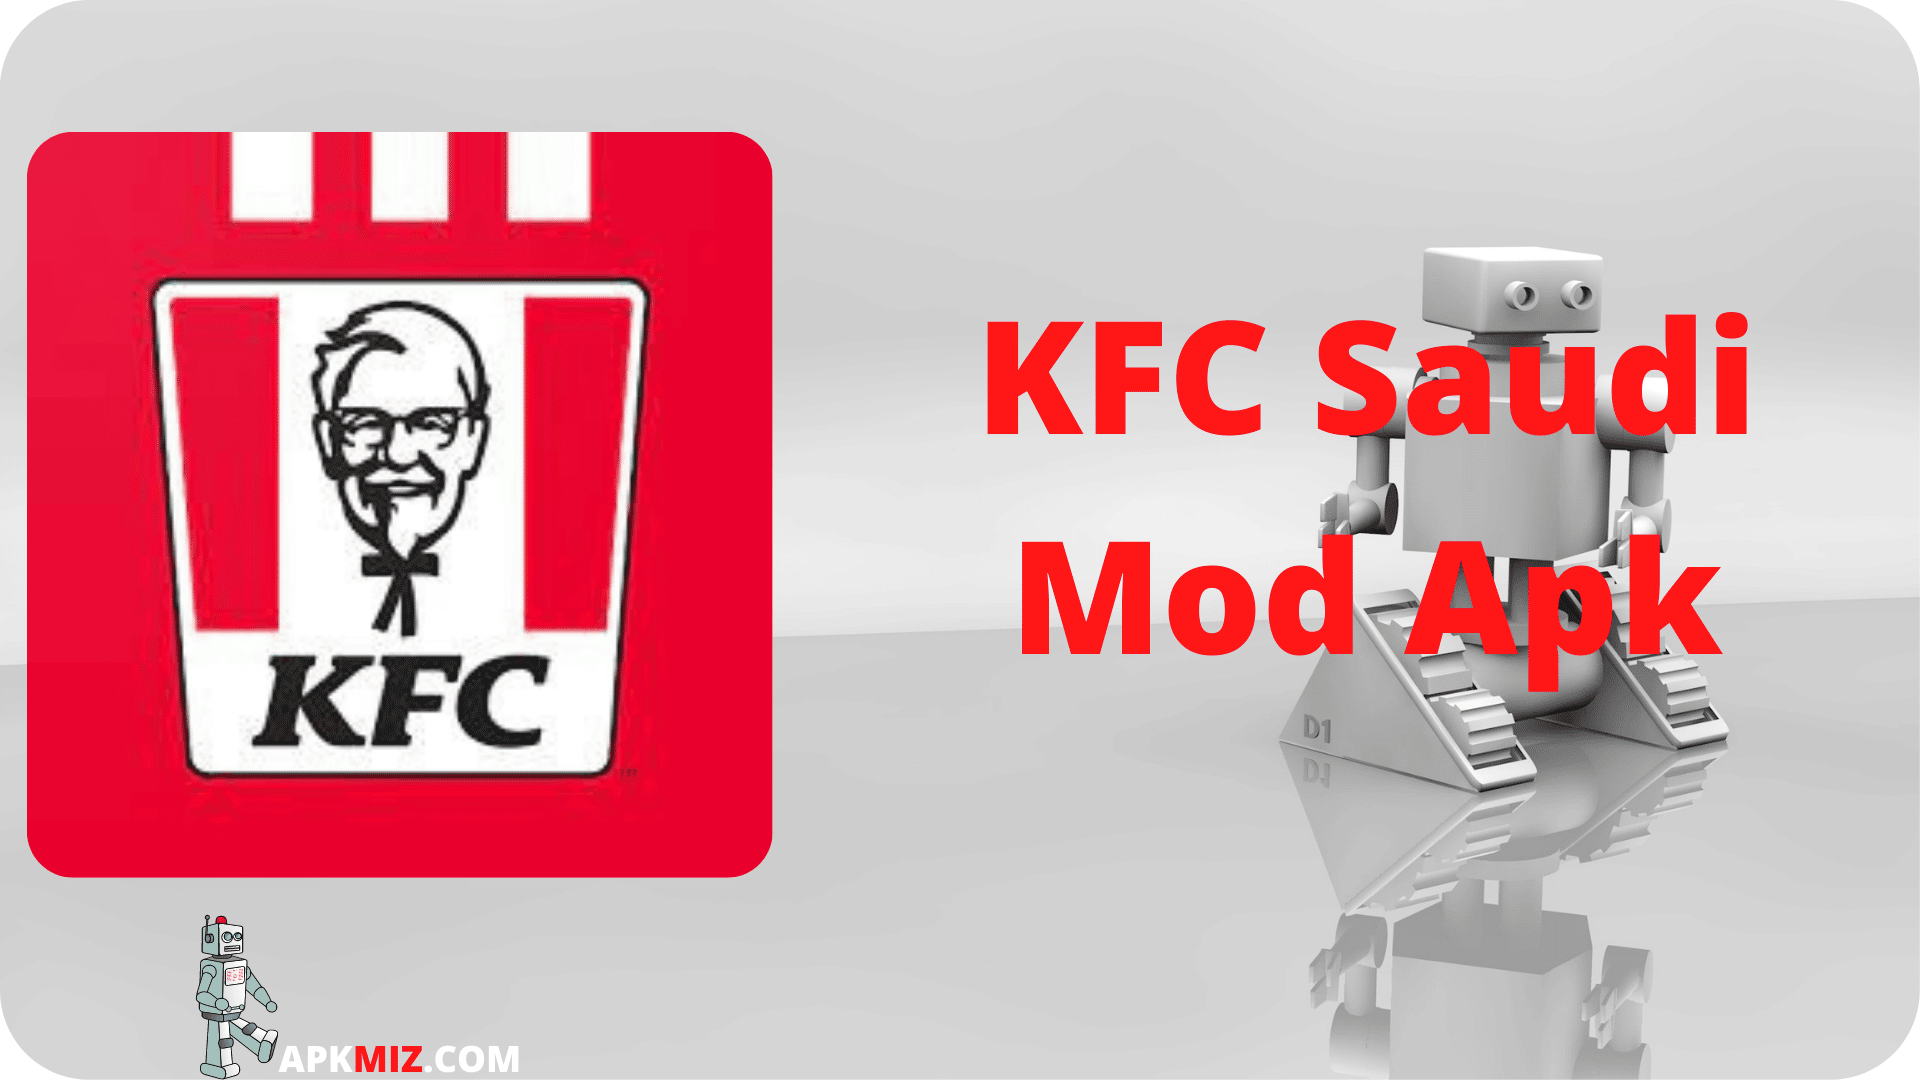 KFC Saudi Mod Apk